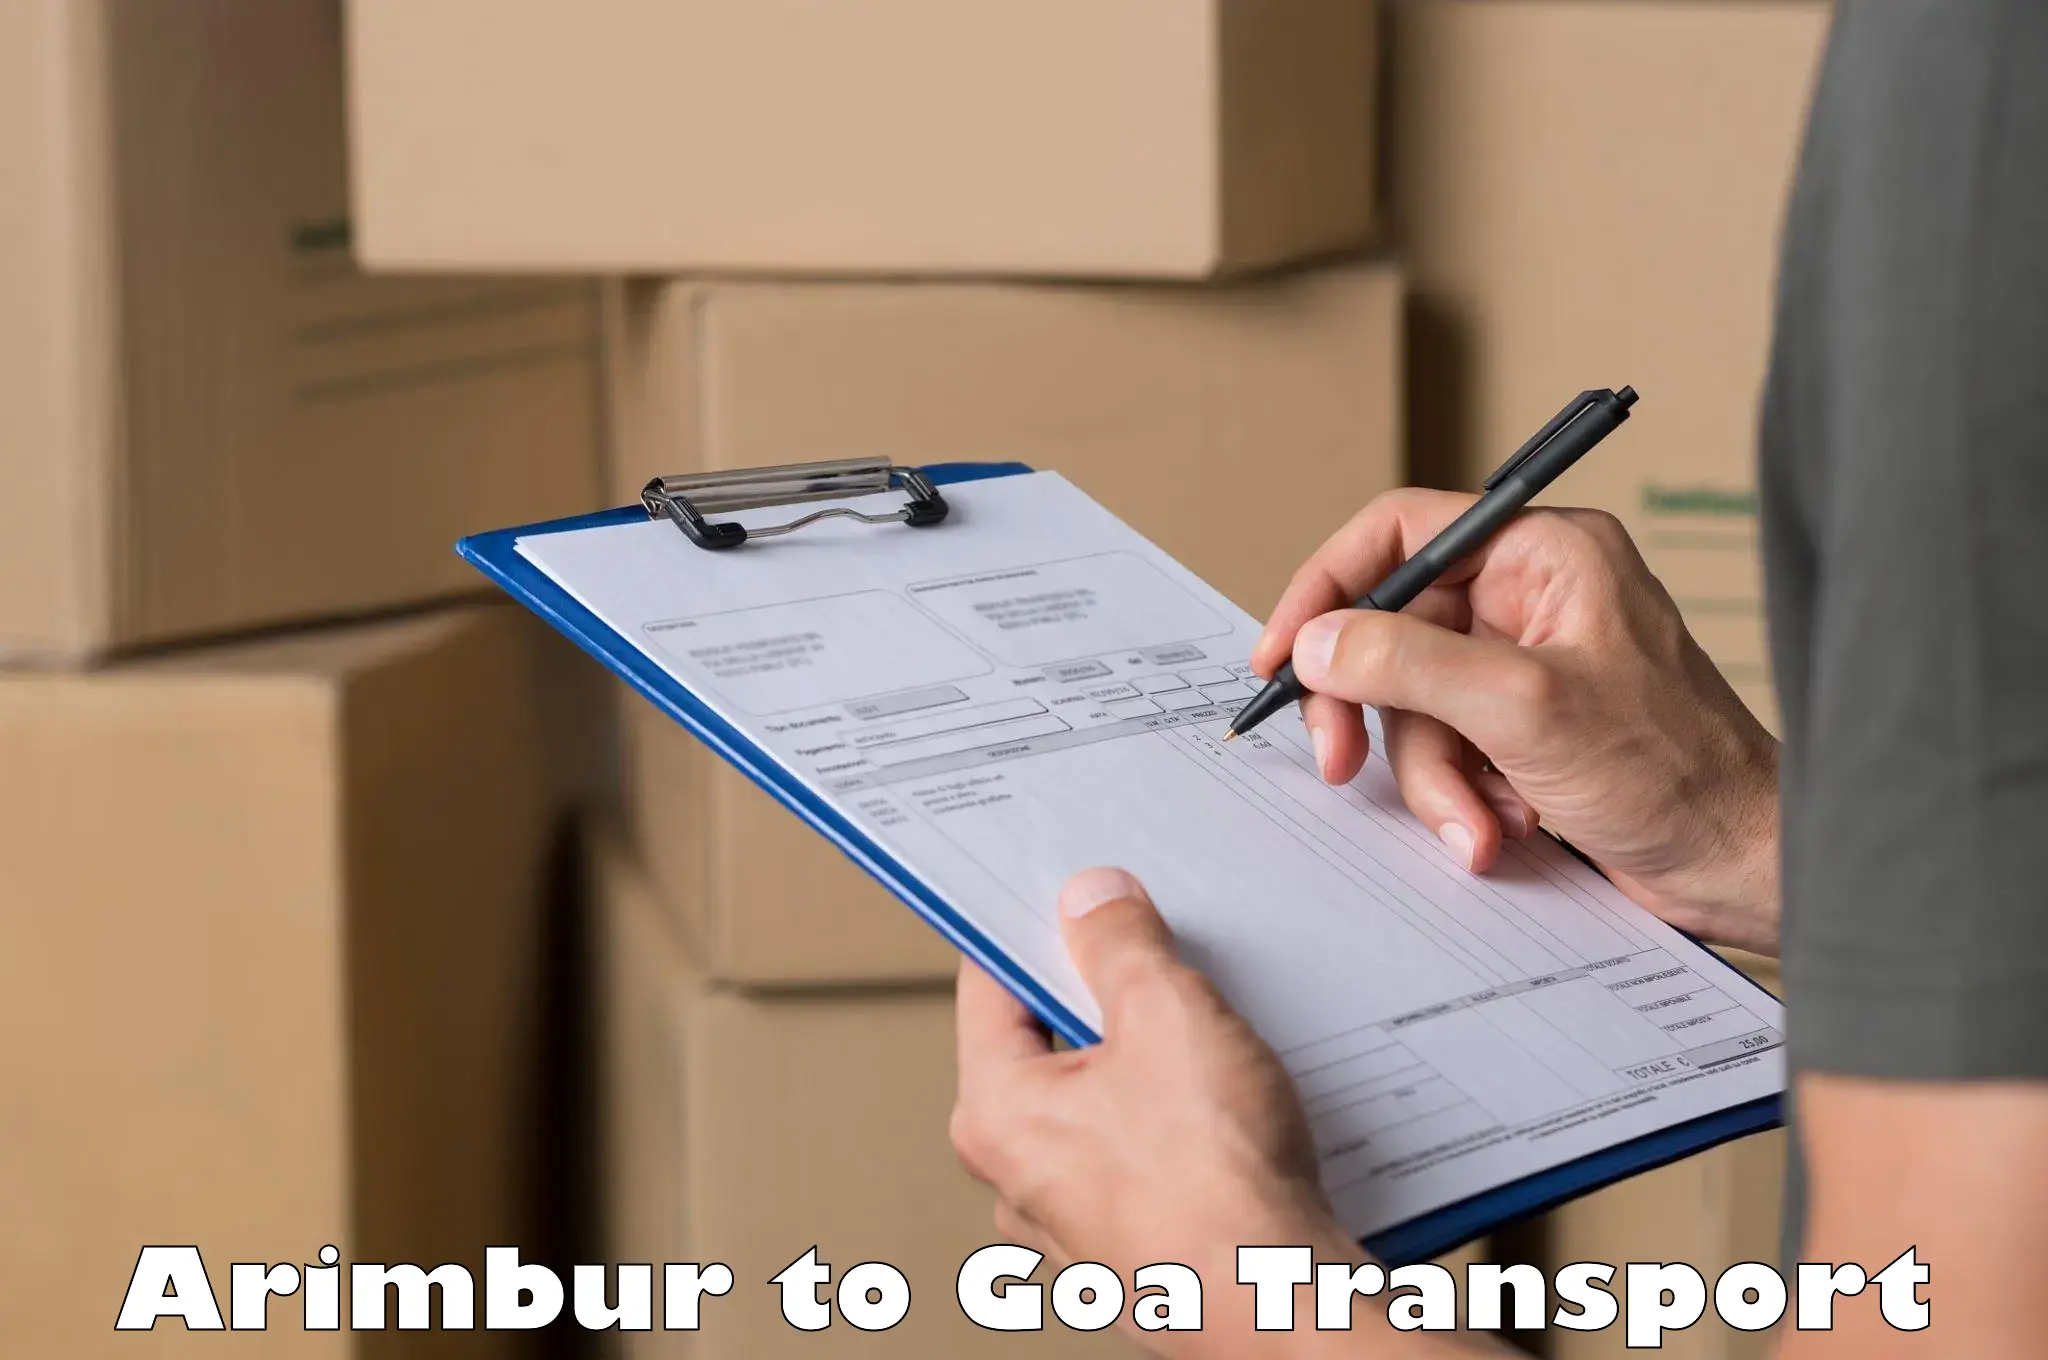 Lorry transport service Arimbur to IIT Goa